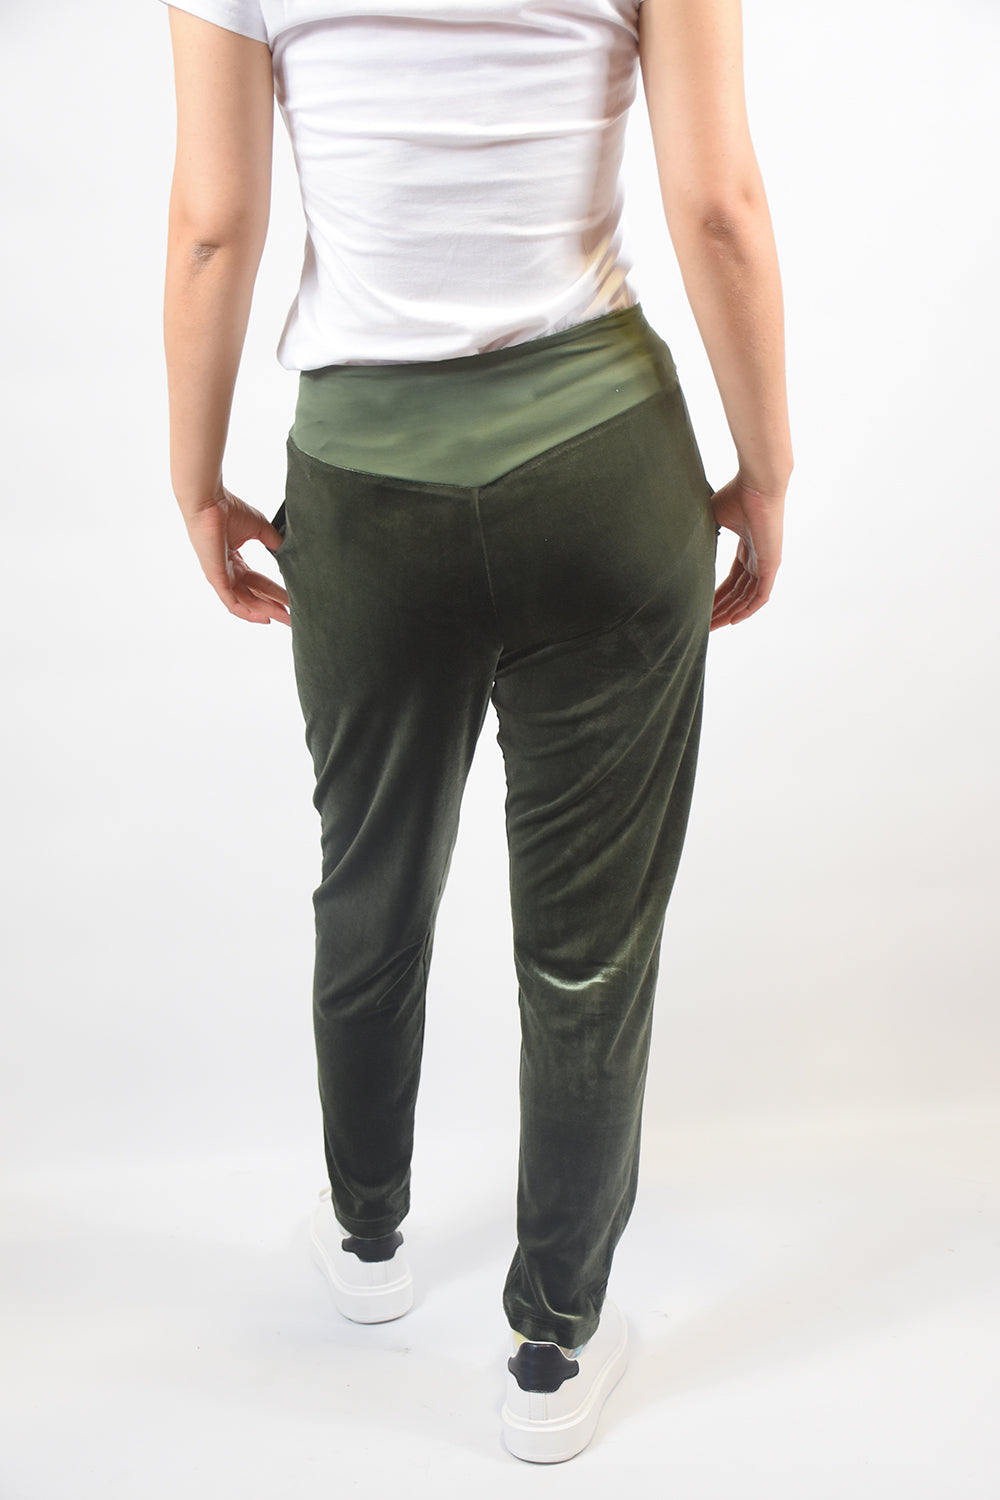 vesta velvet pants in moss green